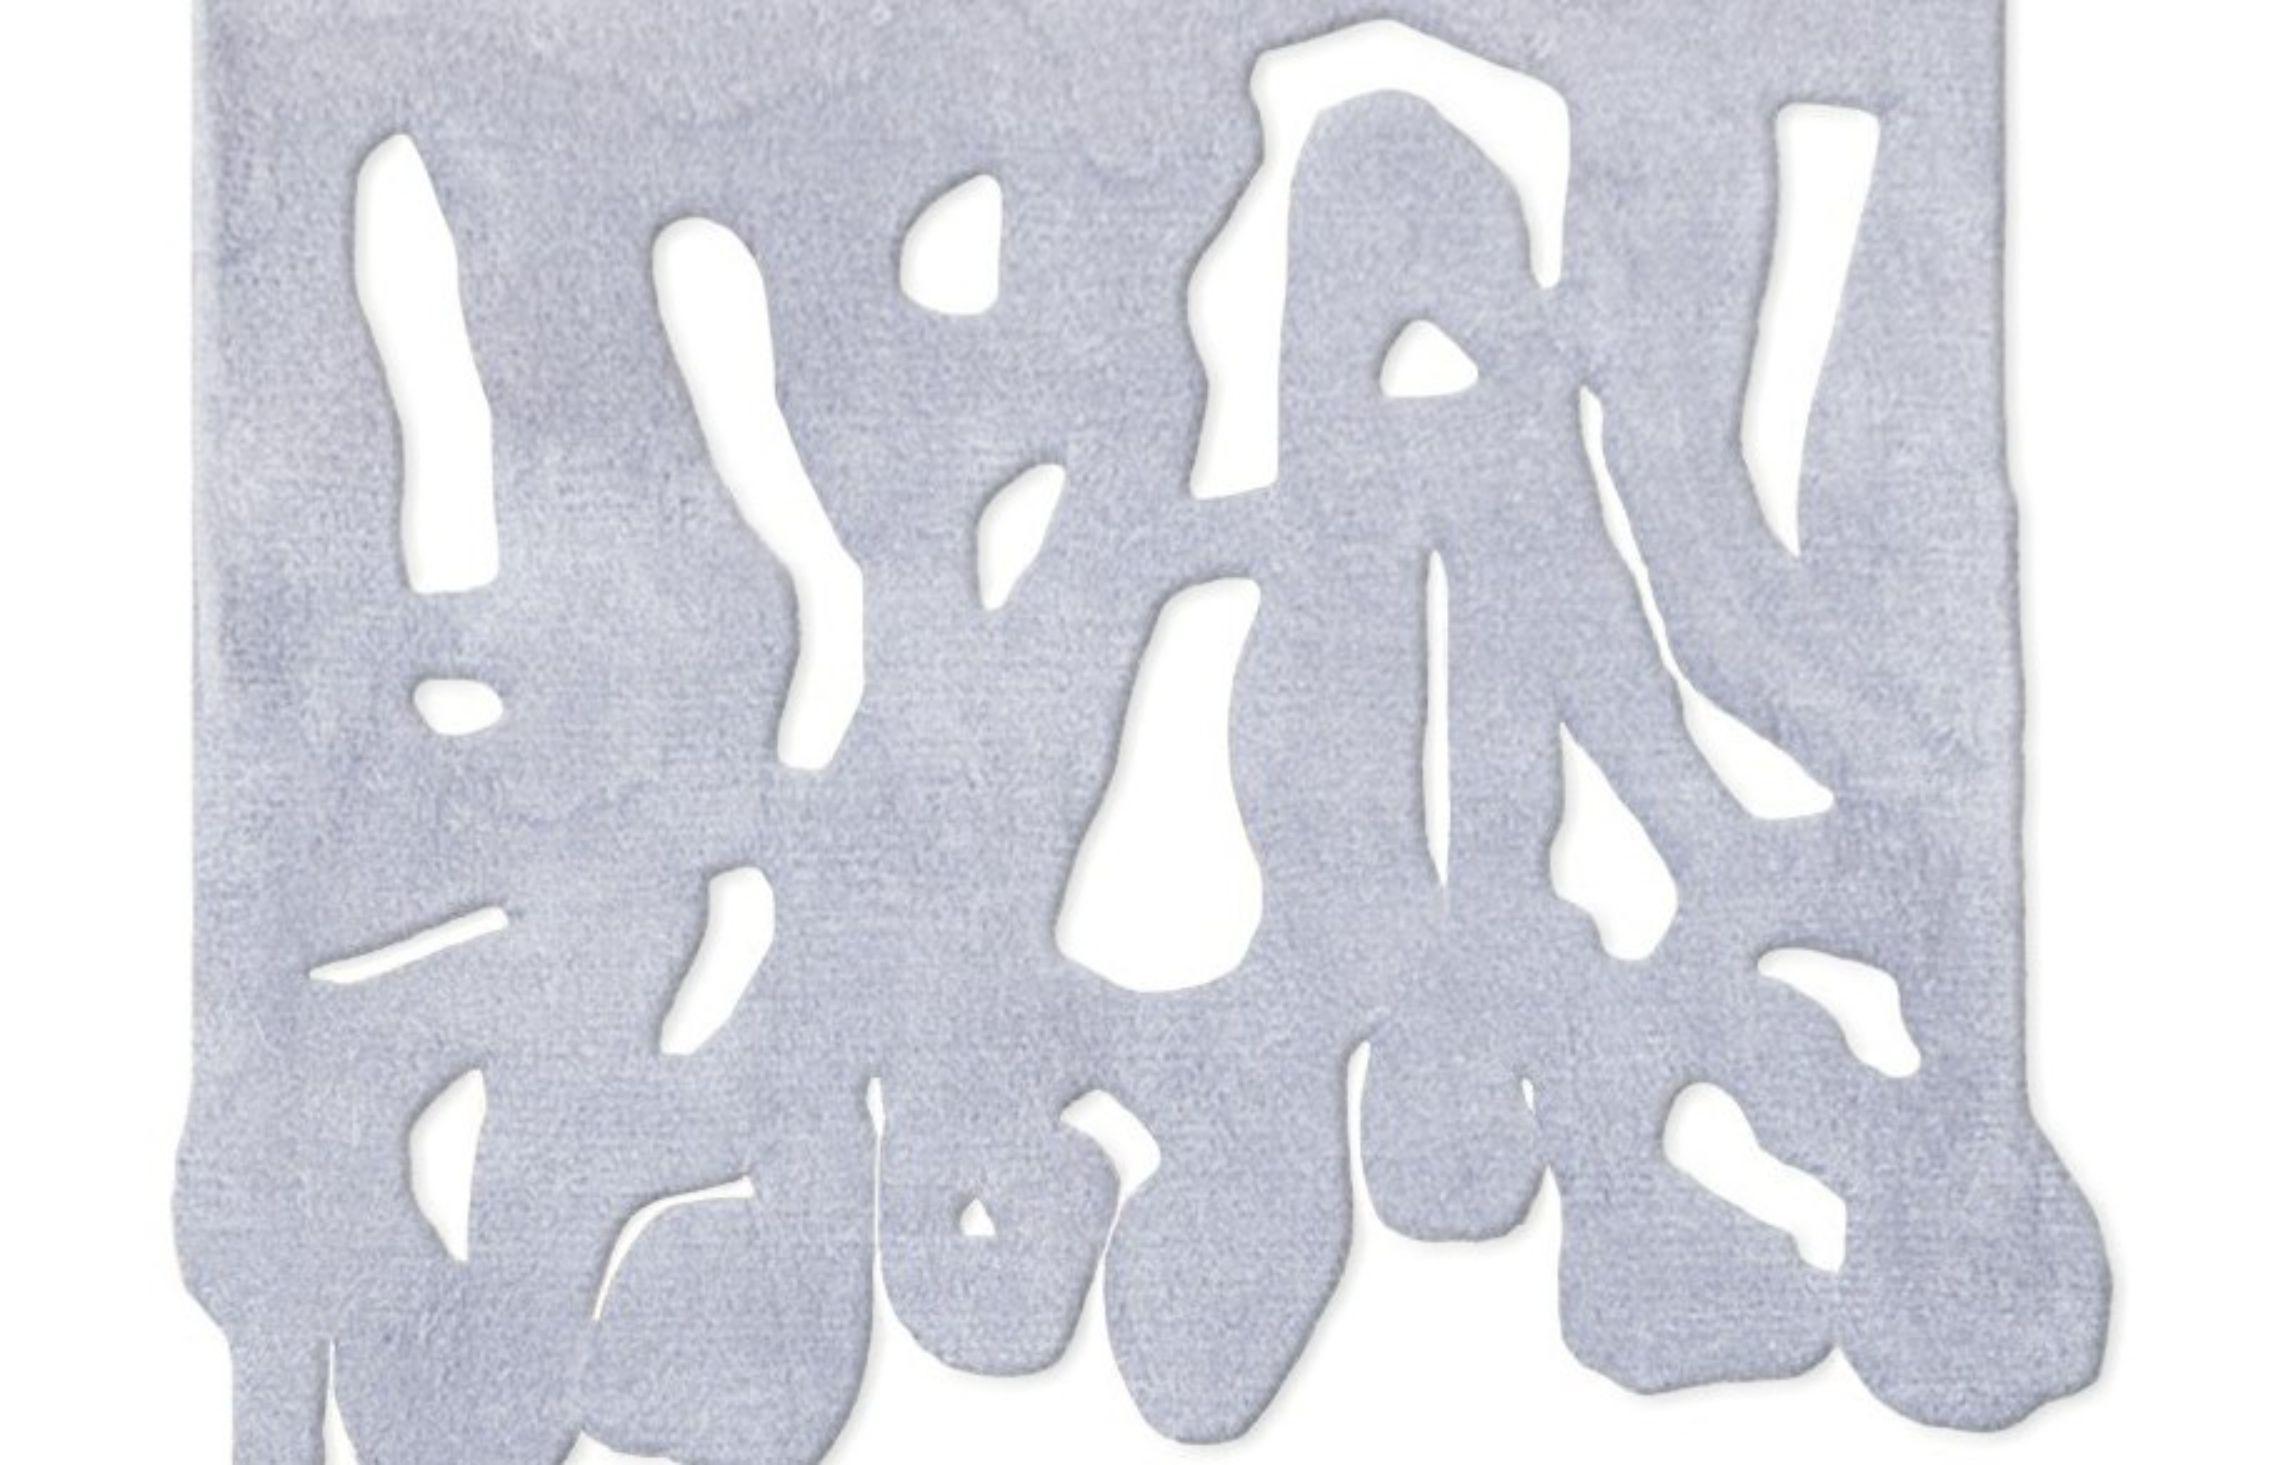 Tapis noué à la main White snakeroot par Laroque Studio
Dimensions : 100 x 80 cm
Matériaux : Acrylique
Qualité : 500.000 points

Il serait presque impossible de citer une seule idée qui a inspiré la collection 00. Ça a commencé avec le tableau